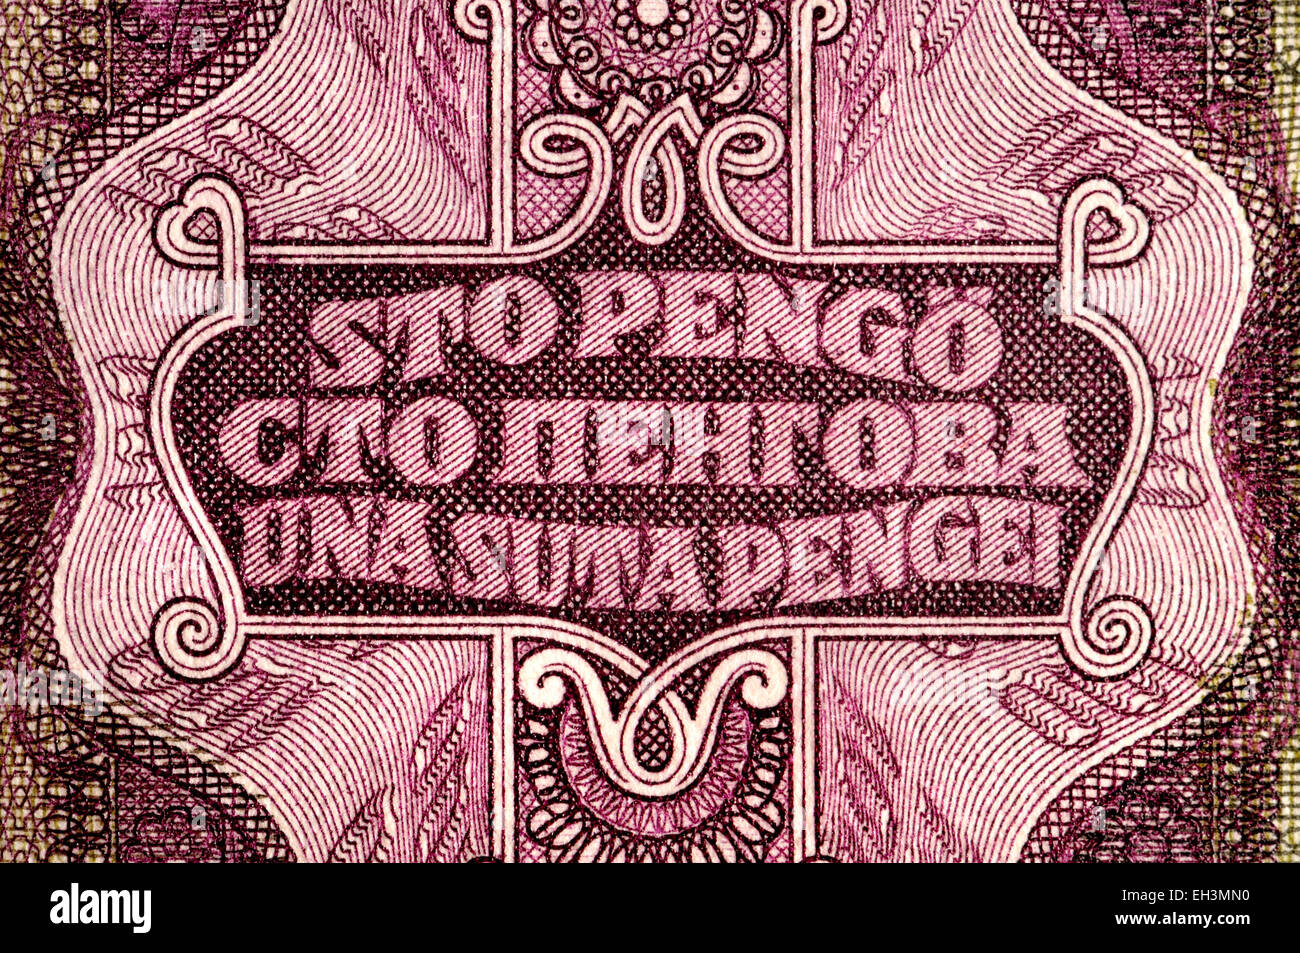 Dettaglio di un ungherese 1930 100 Pengo banconota che mostra il testo per '100 Pengo' in ceco, russo e rumeno Foto Stock